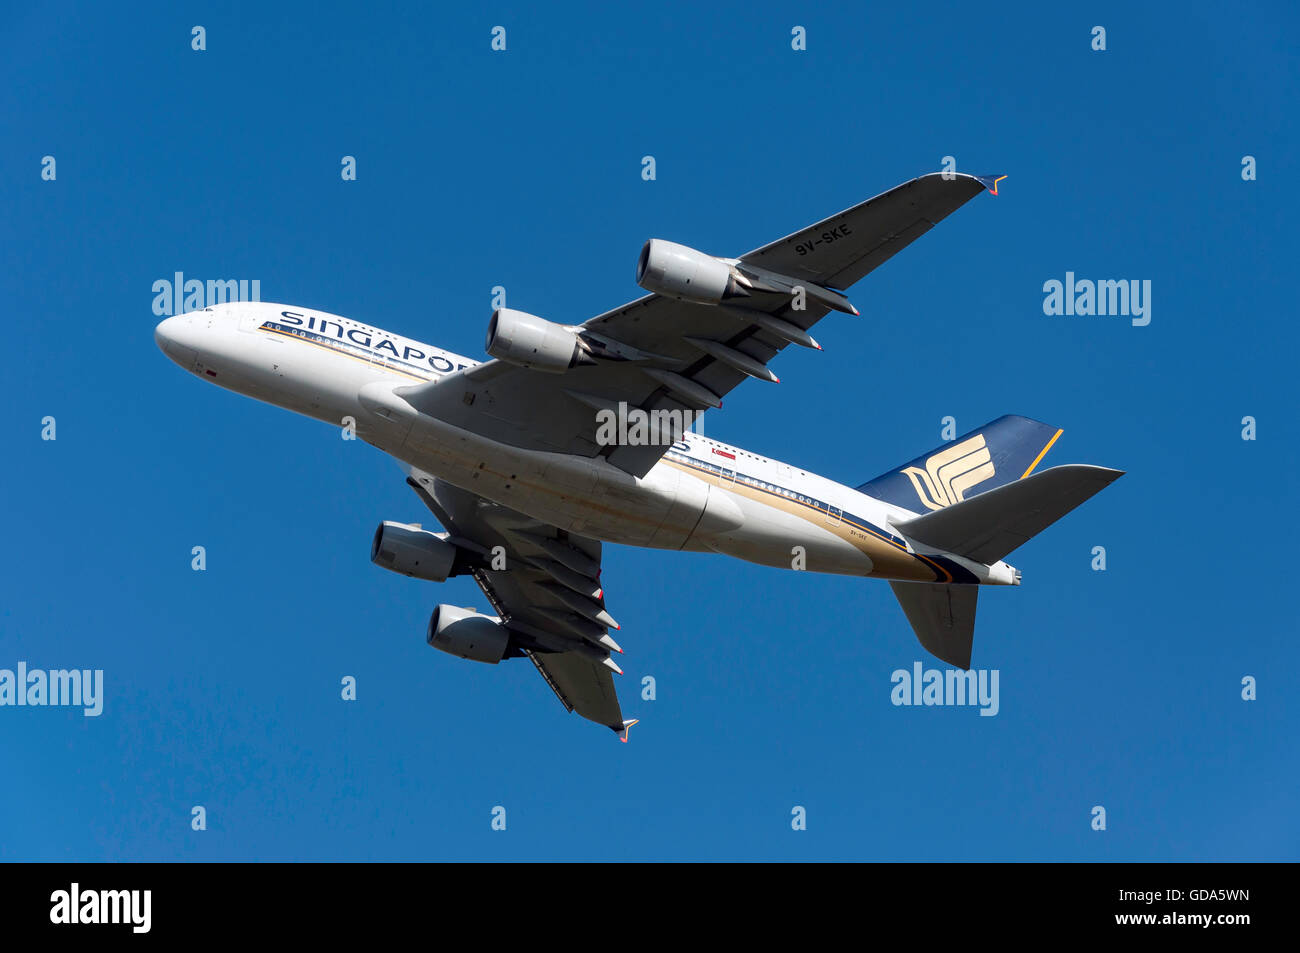 Singapore Airlines Airbus A380 décollant de l'aéroport de Heathrow, Londres, Angleterre, Royaume-Uni Banque D'Images